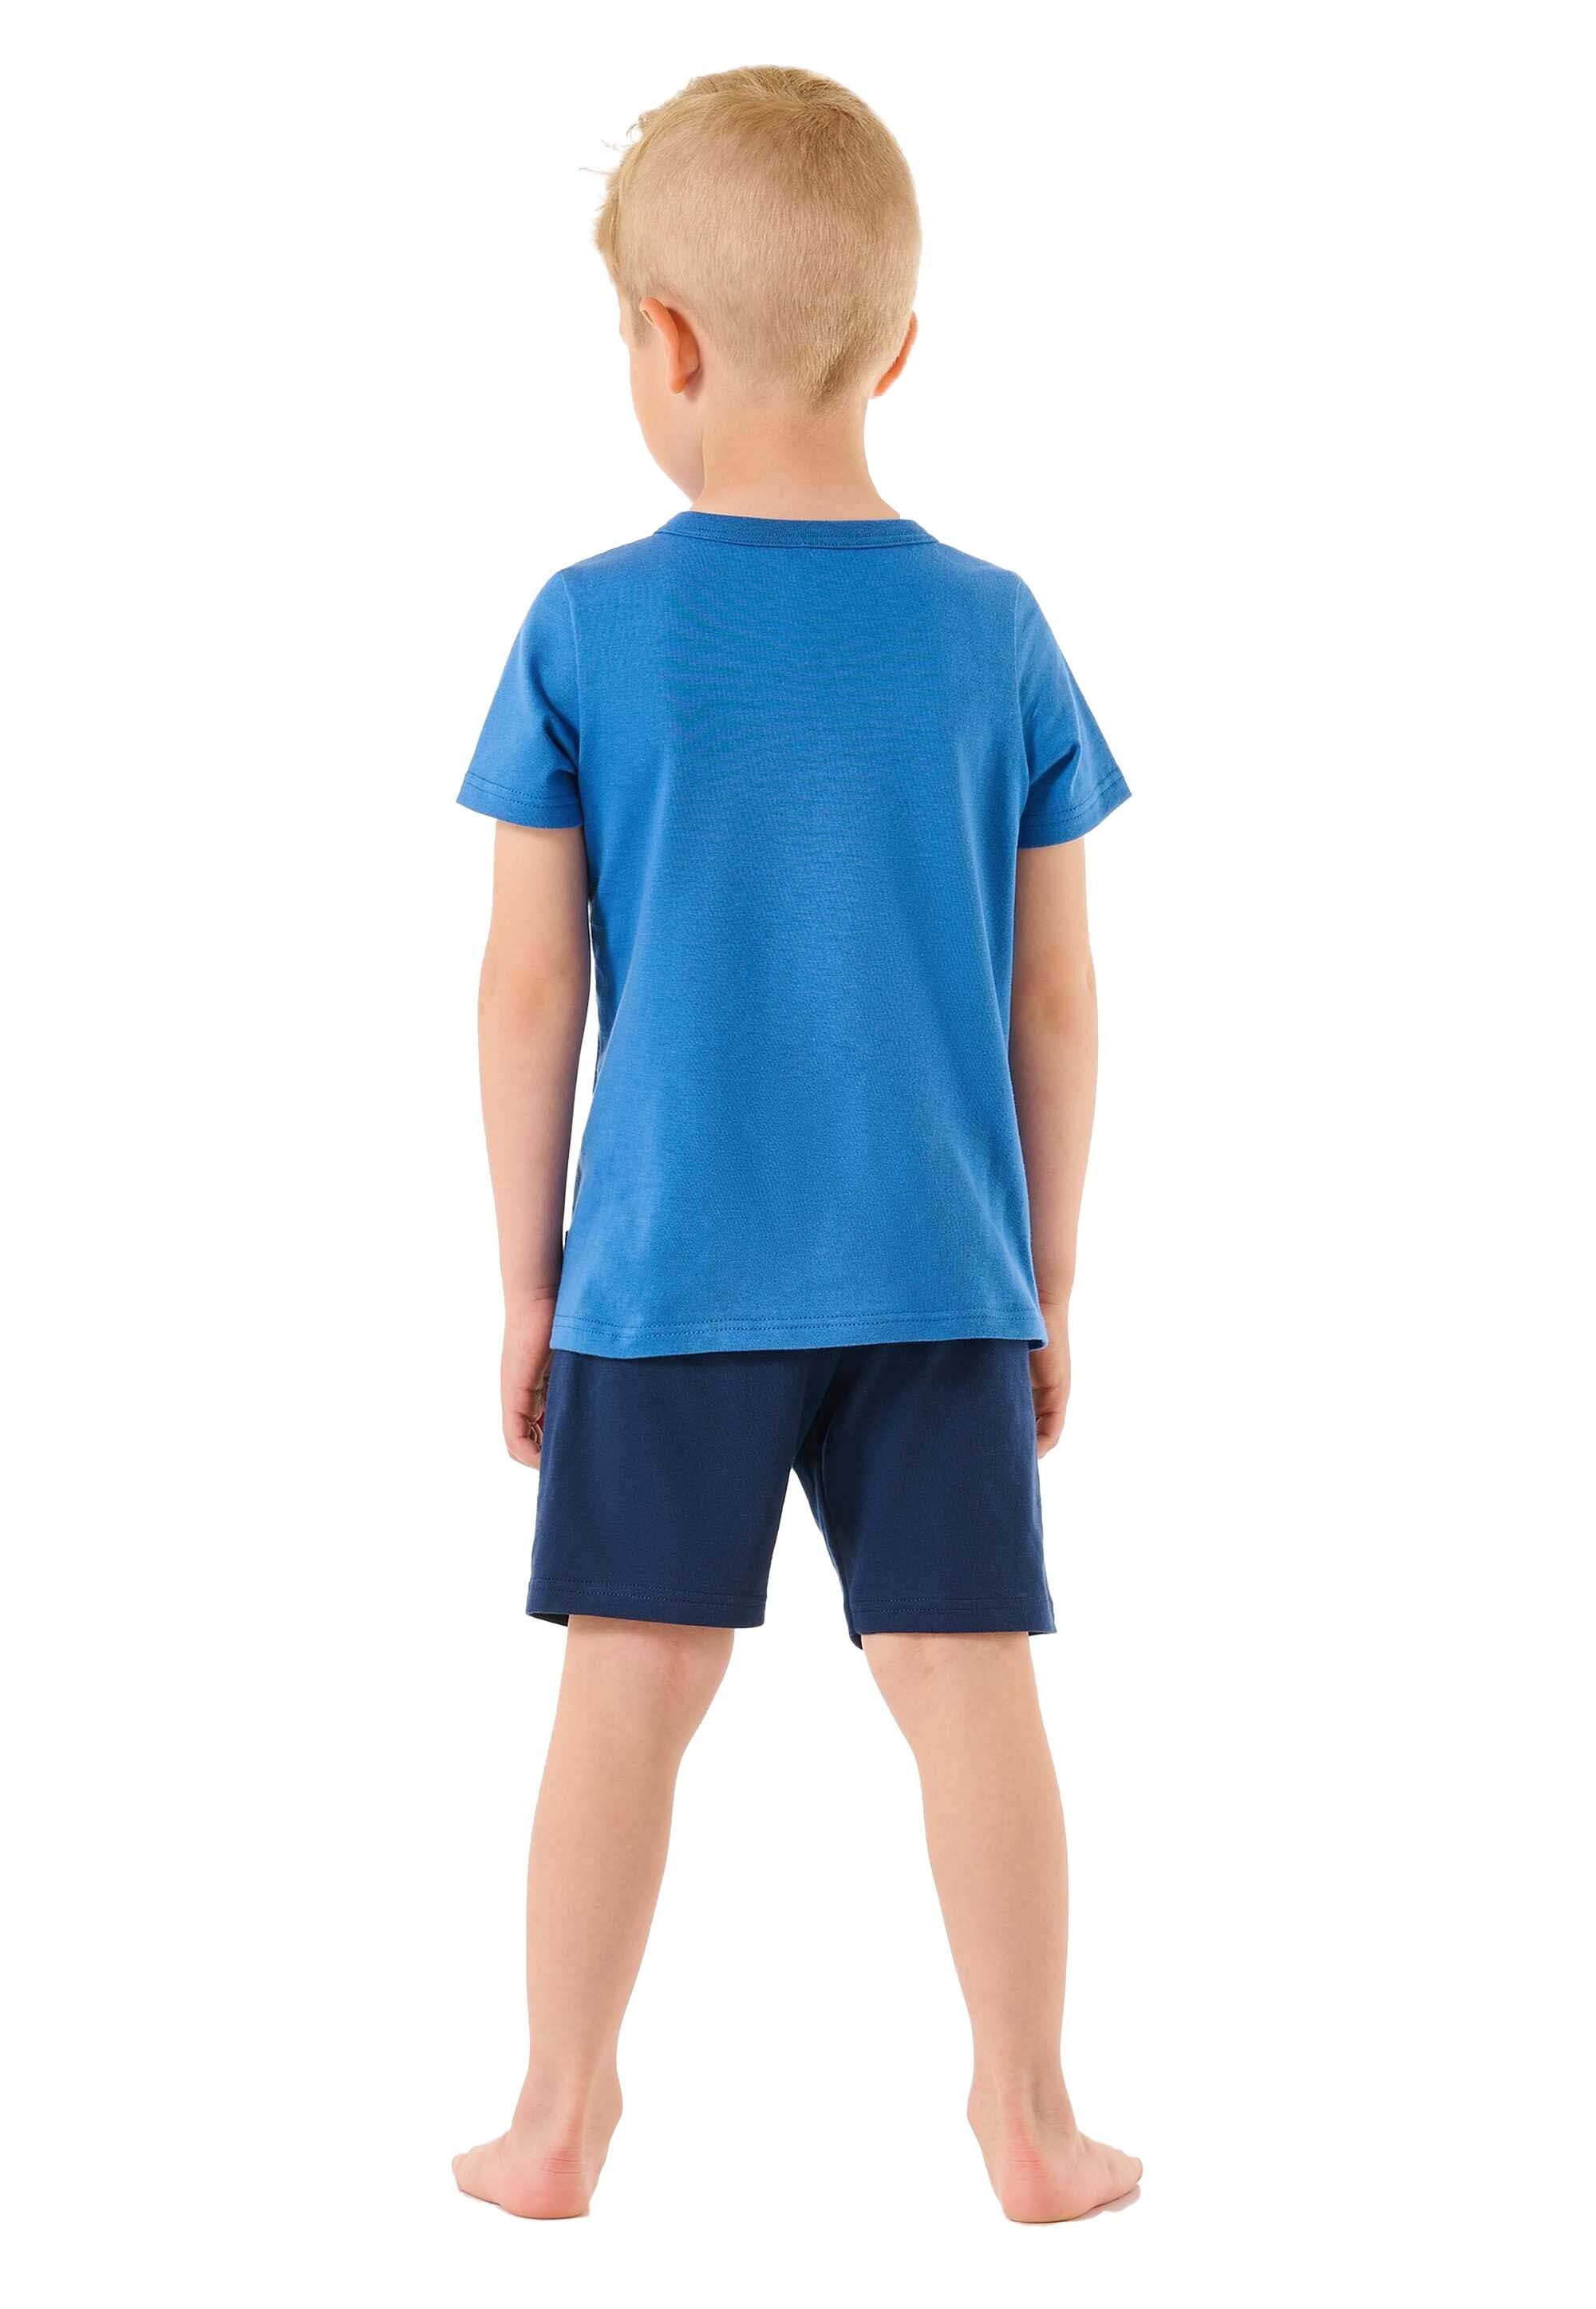 kurz, - Jungen Set Schlafanzug Blau/Dunkelblau Schiesser Kinder Pyjama 2-tlg.